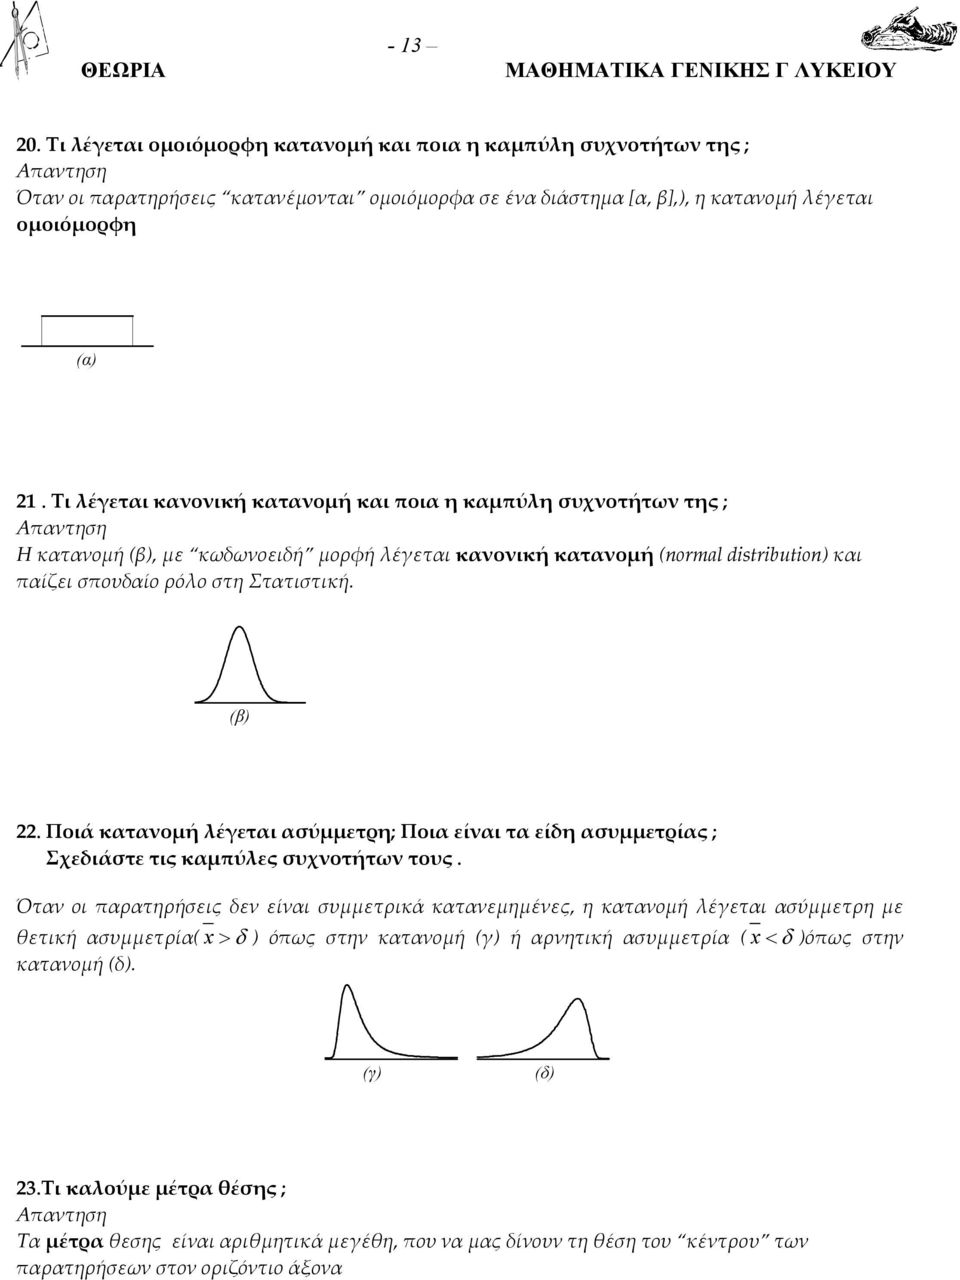 Ποια είναι τα είδη ασυμμετρίας ; Σχεδιάστε τις αμπύλες συχνοτήτων τους Όταν οι παρατηρήσεις δεν είναι συμμετριά ατανεμημένες, η ατανομή λέγεται ασύμμετρη με θετιή ασυμμετρία > δ όπως στην